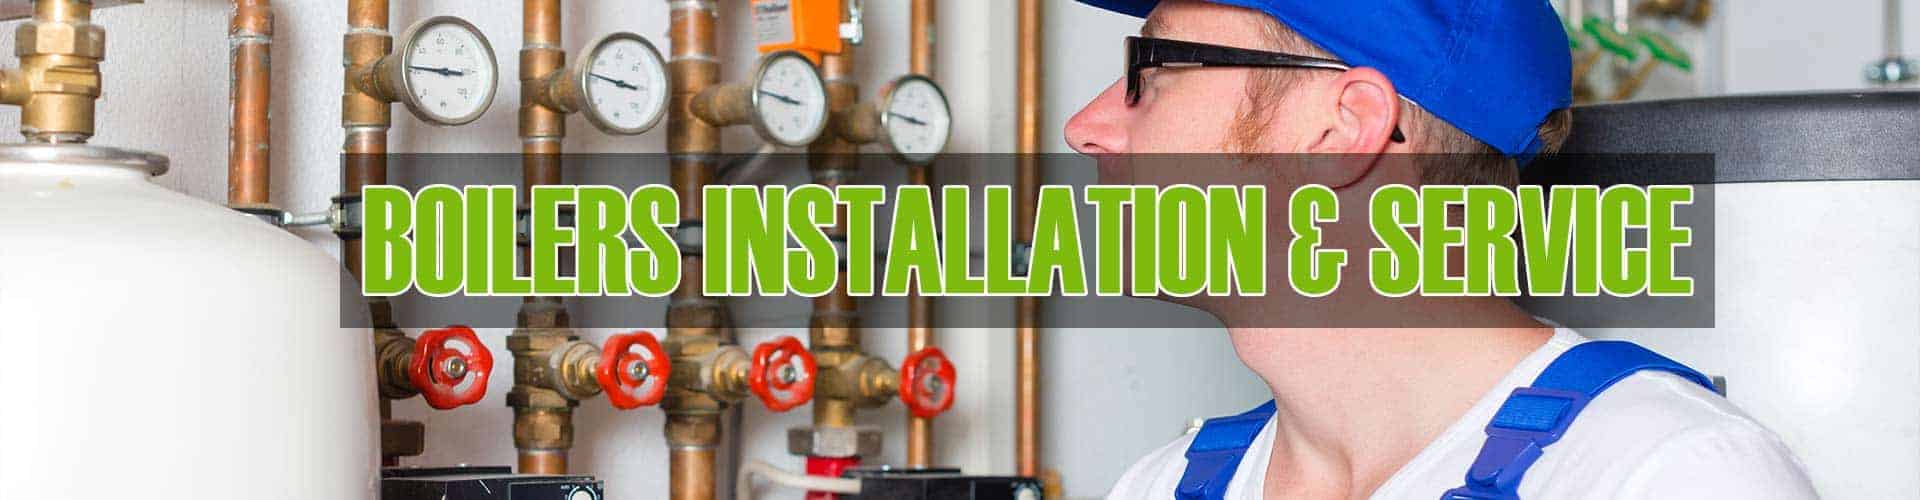 Boilers Installation Boiler Repair and Service in Elgin Illinois